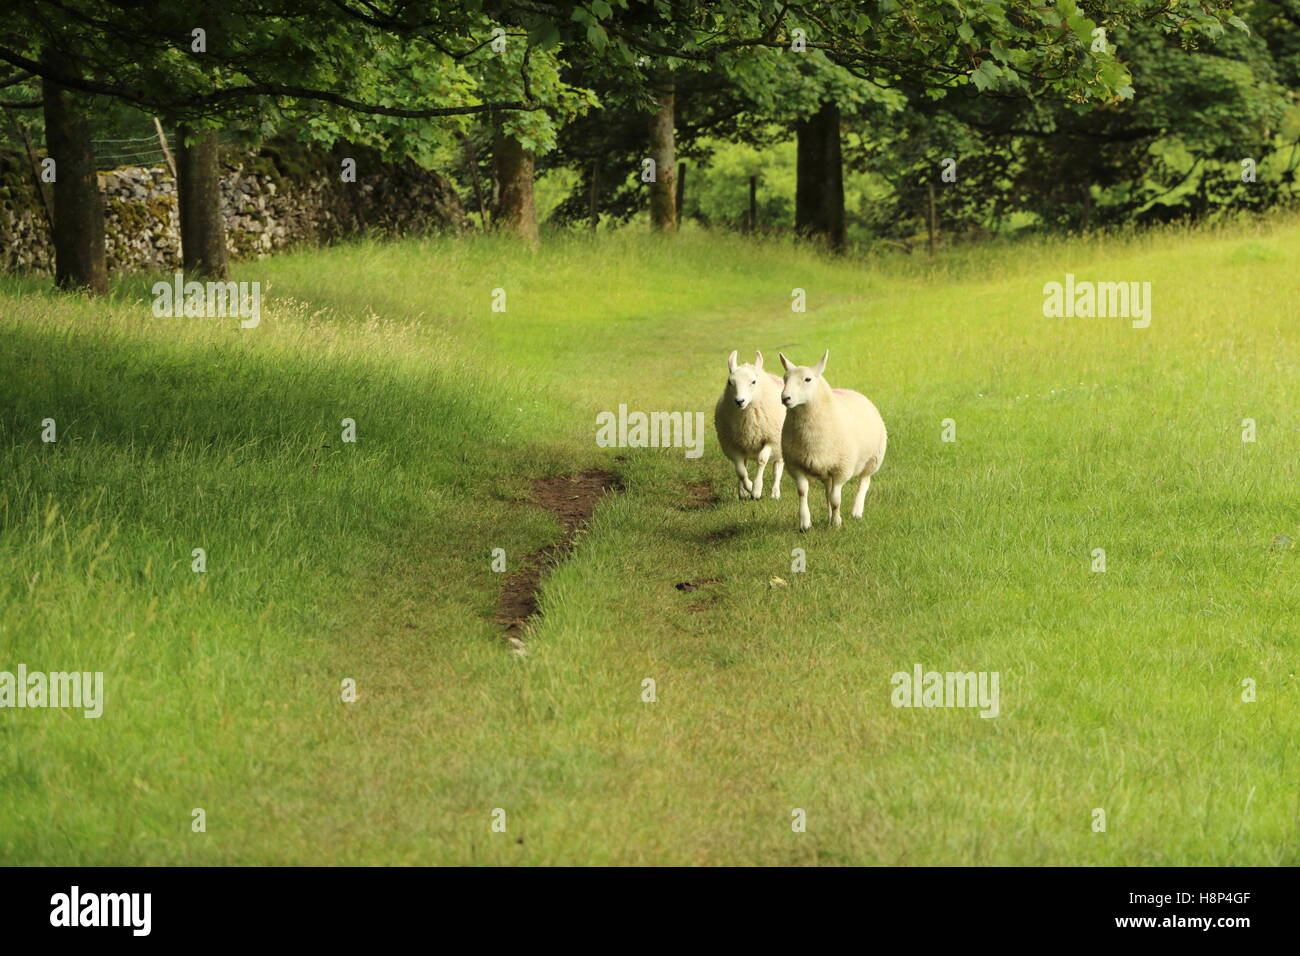 Deux moutons qui se tournent vers l'appareil photo le long d'une piste difficile à l'intérieur un champ herbacé Banque D'Images